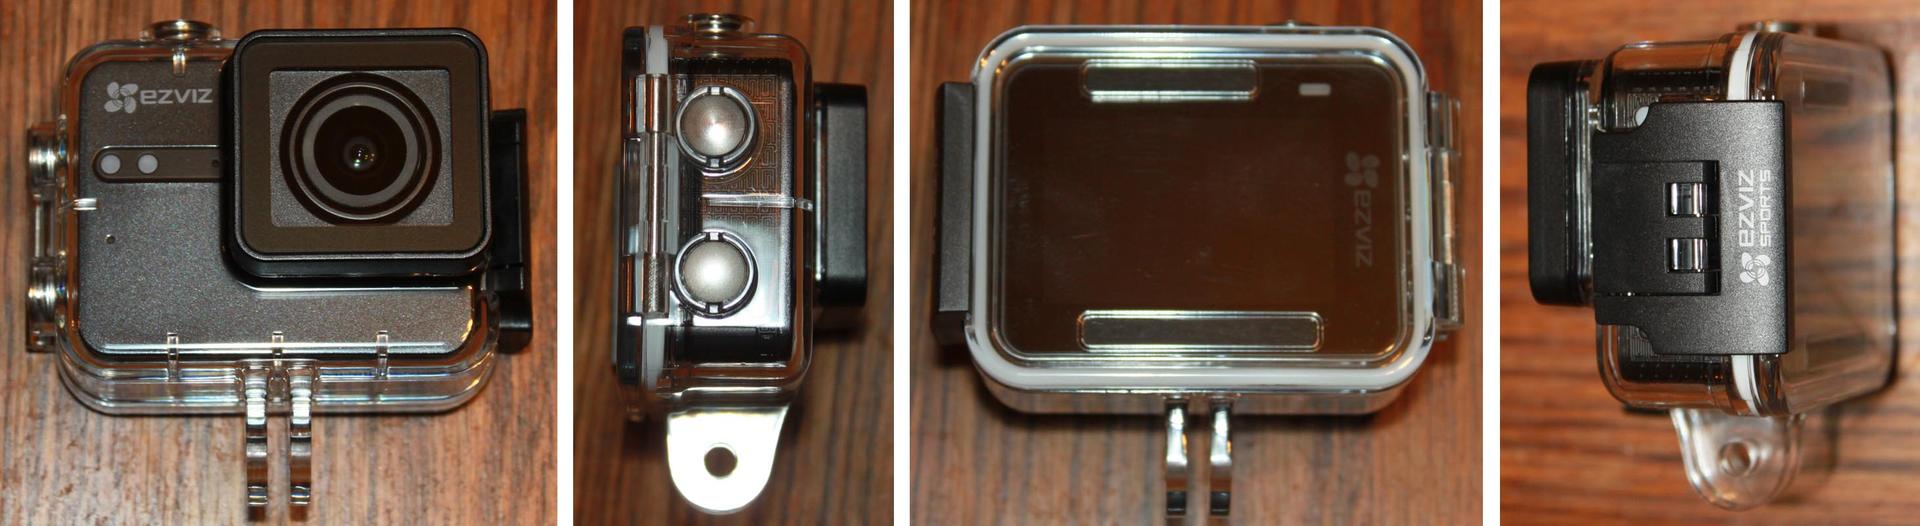 Ezviz S5 и S5+: экшн-камеры повышенной четкости - 10